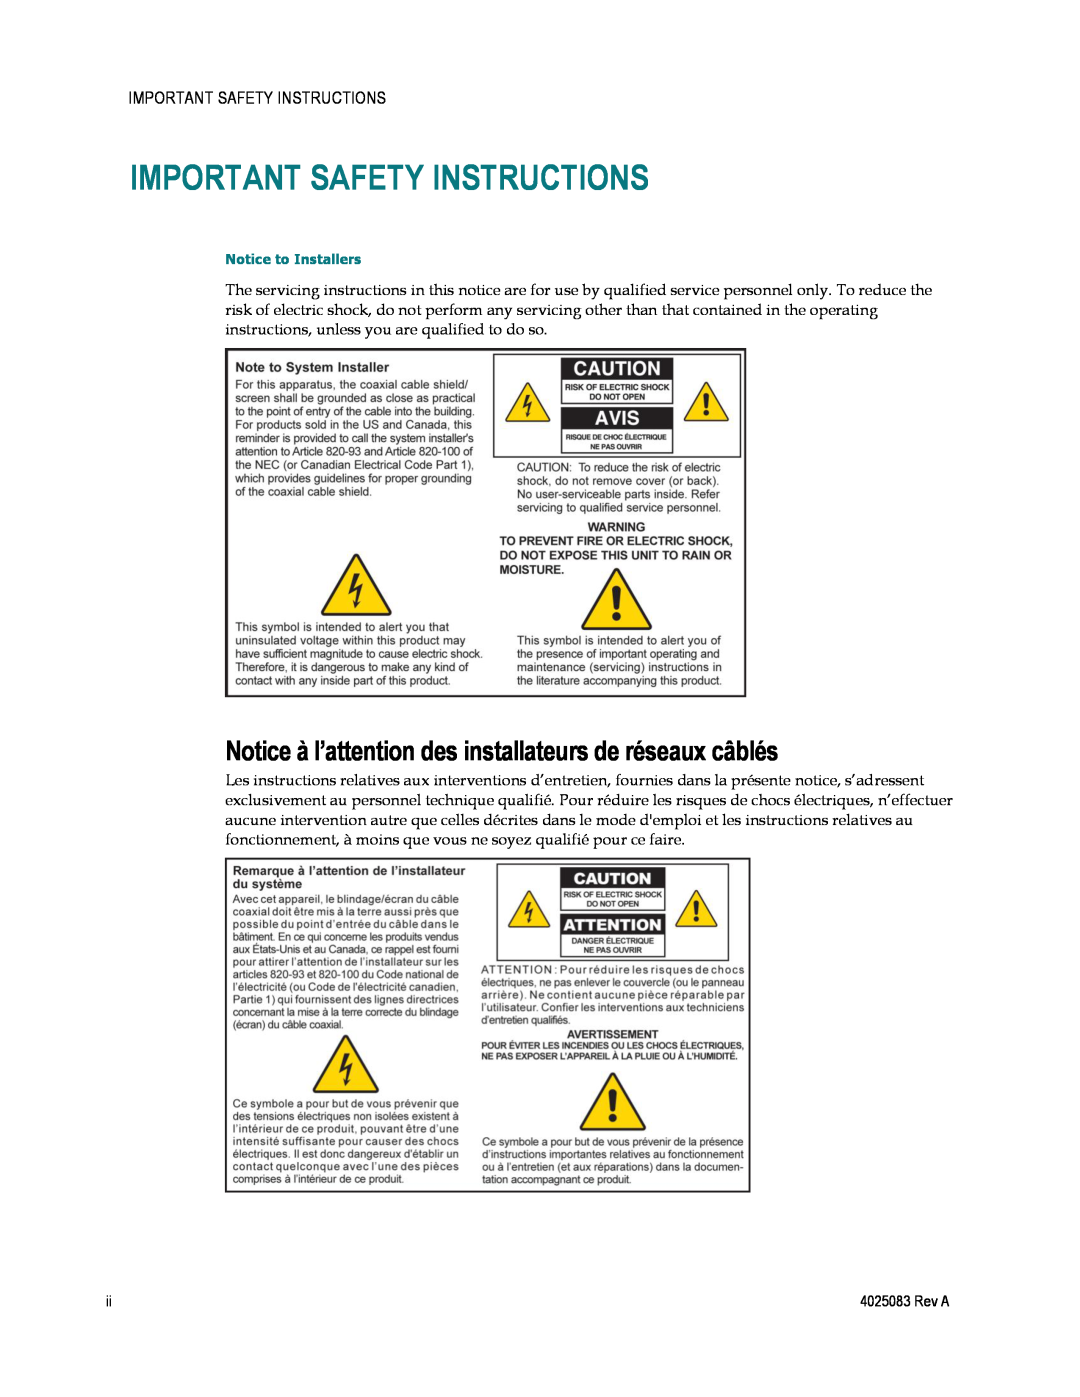 Cisco Systems 4039760, EPC3827 Important Safety Instructions, Notice à l’attention des installateurs de réseaux câblés 